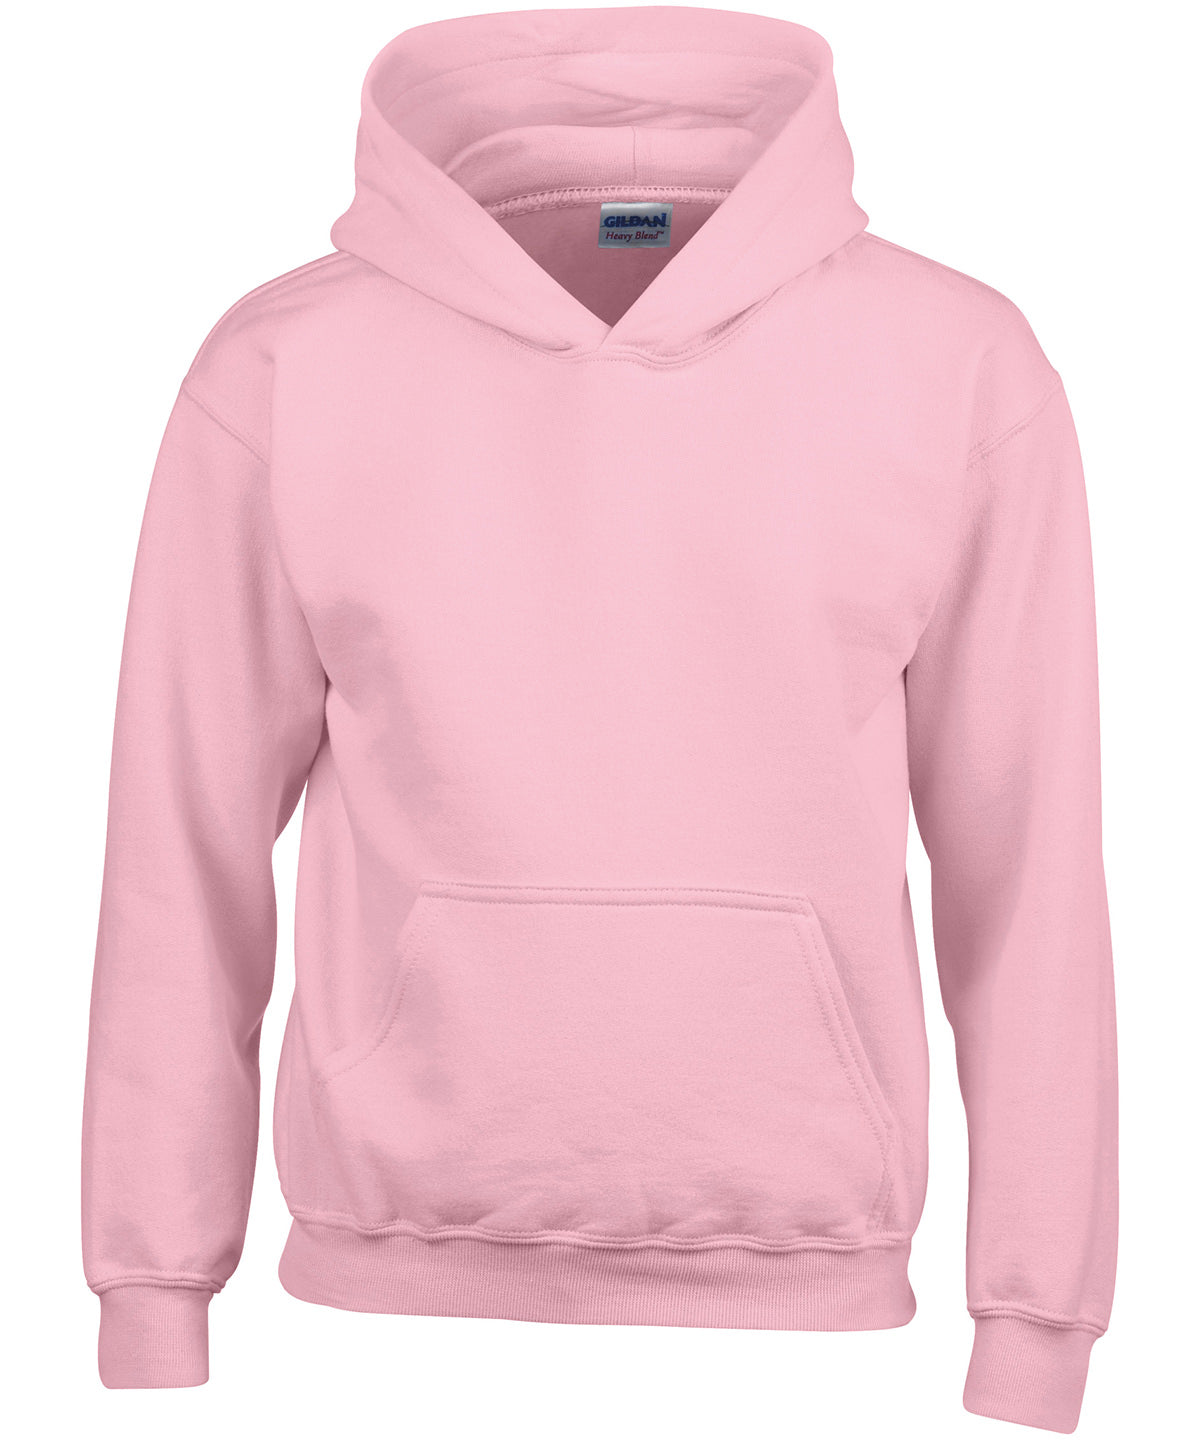 Personalised Hoodies - Dark Grey Gildan Heavy Blend™ youth hooded sweatshirt